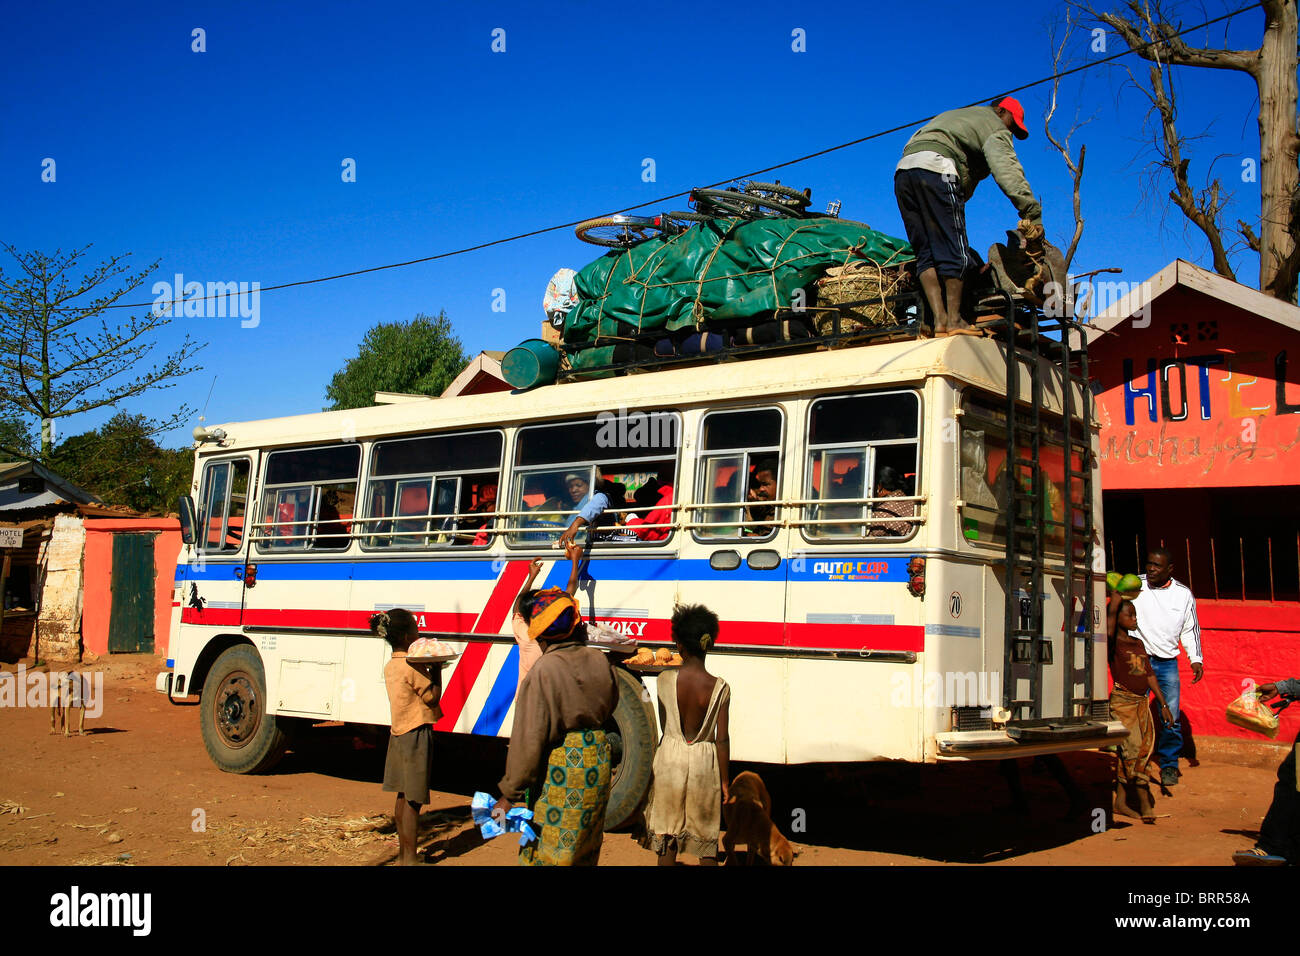 Venditori ambulanti che vendono merci di passeggeri di un autobus mentre un uomo carichi di bagagli sul tetto. Foto Stock